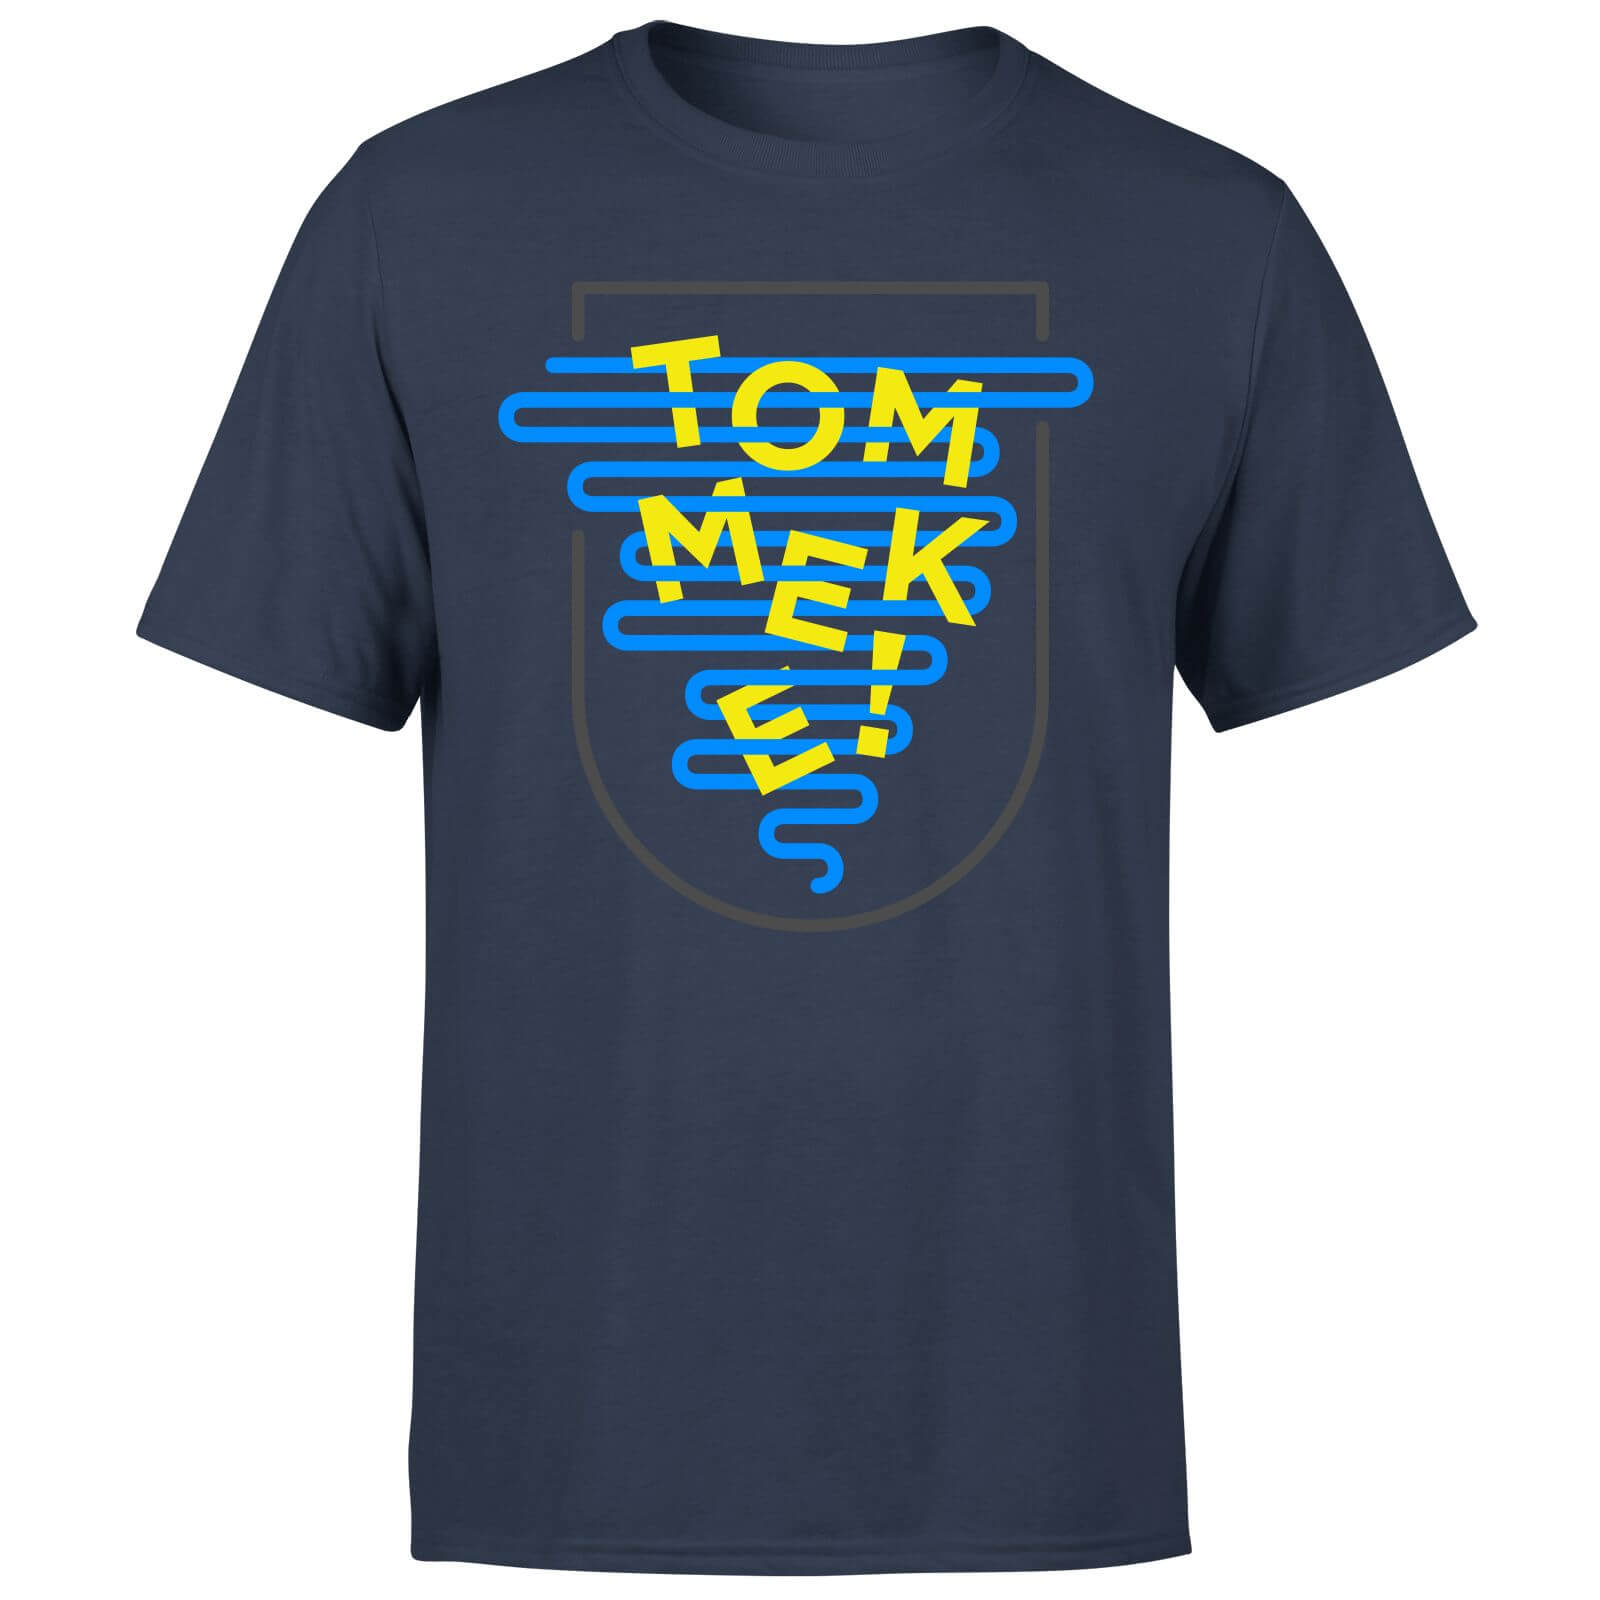 Tommeke Men's T-Shirt - XL - Navy